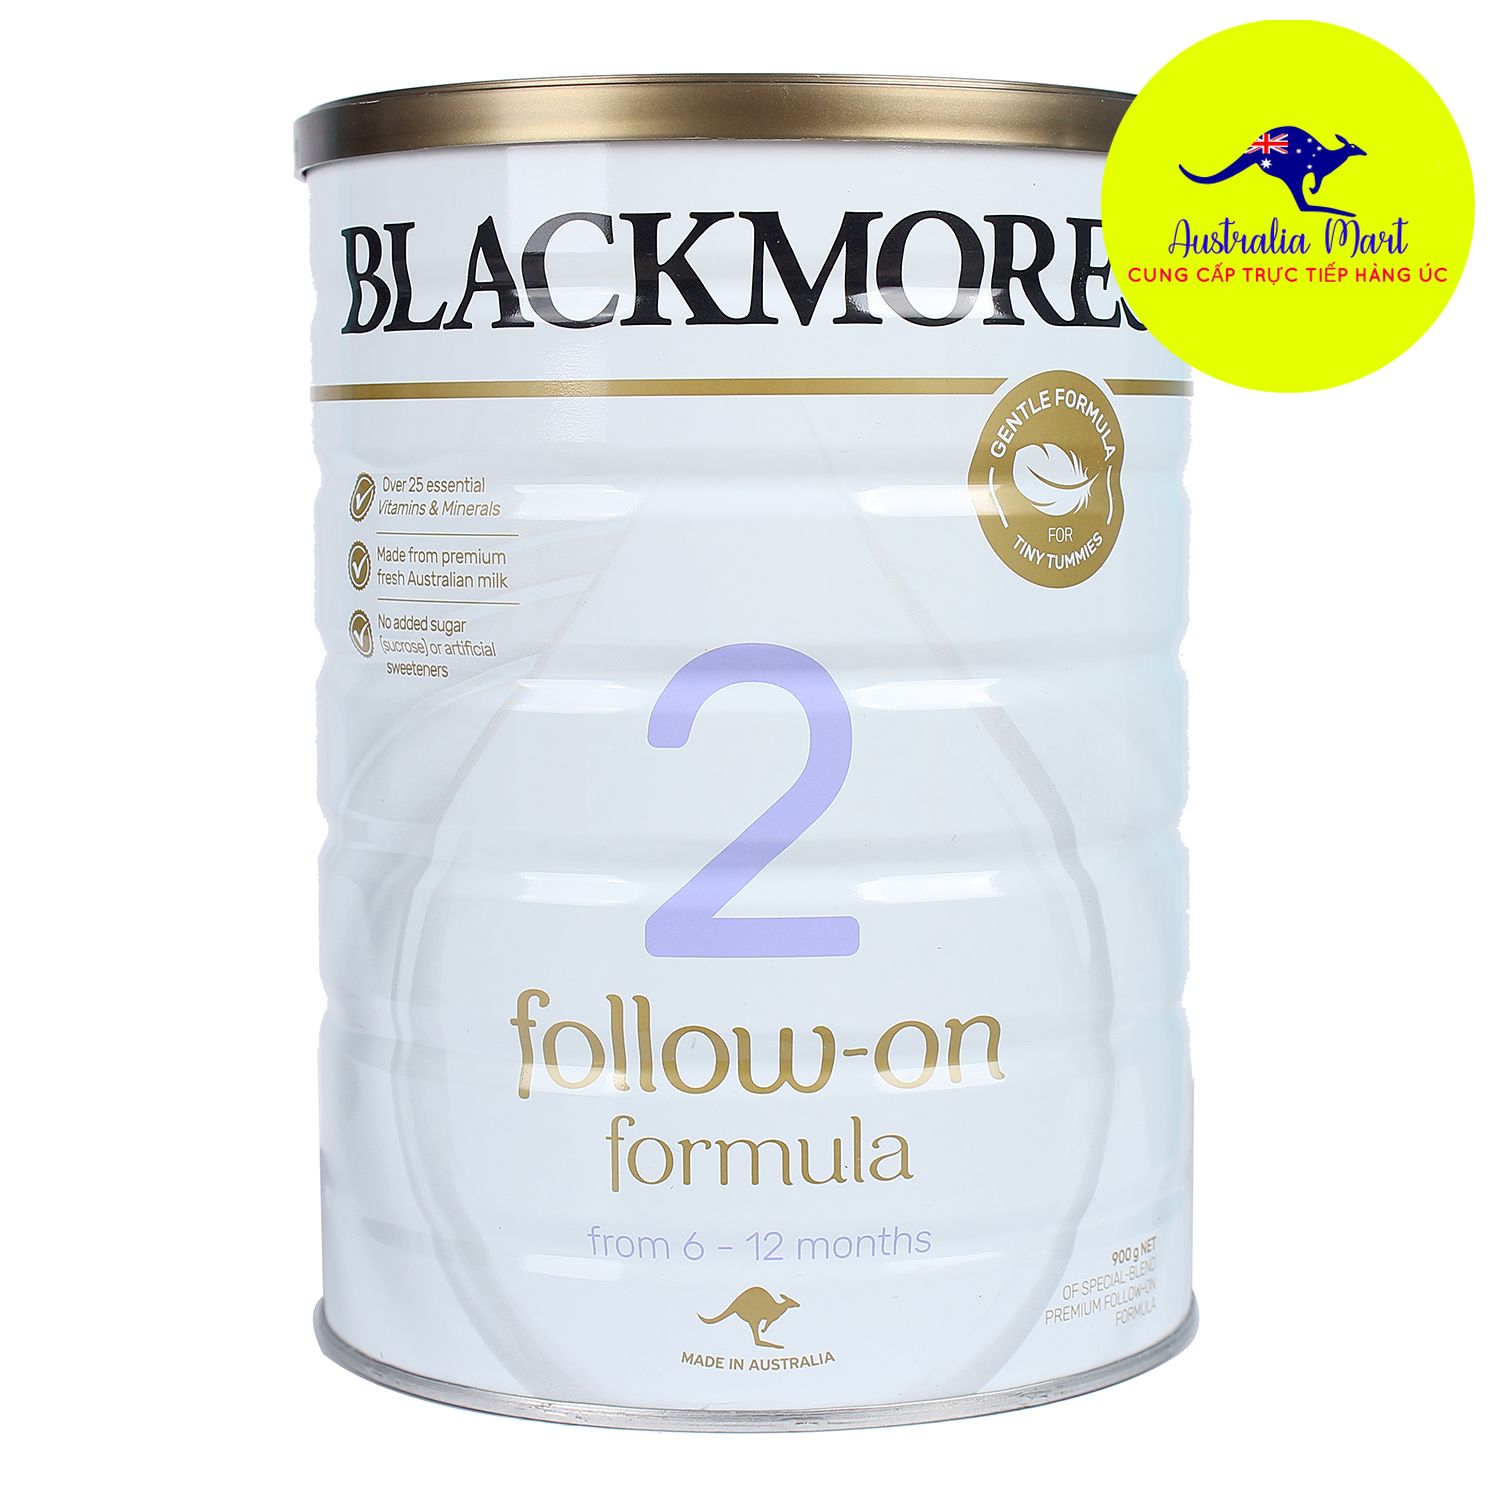 Sữa Blackmores số 2 - Sữa dành cho trẻ từ 6 - 12 tháng tuổi